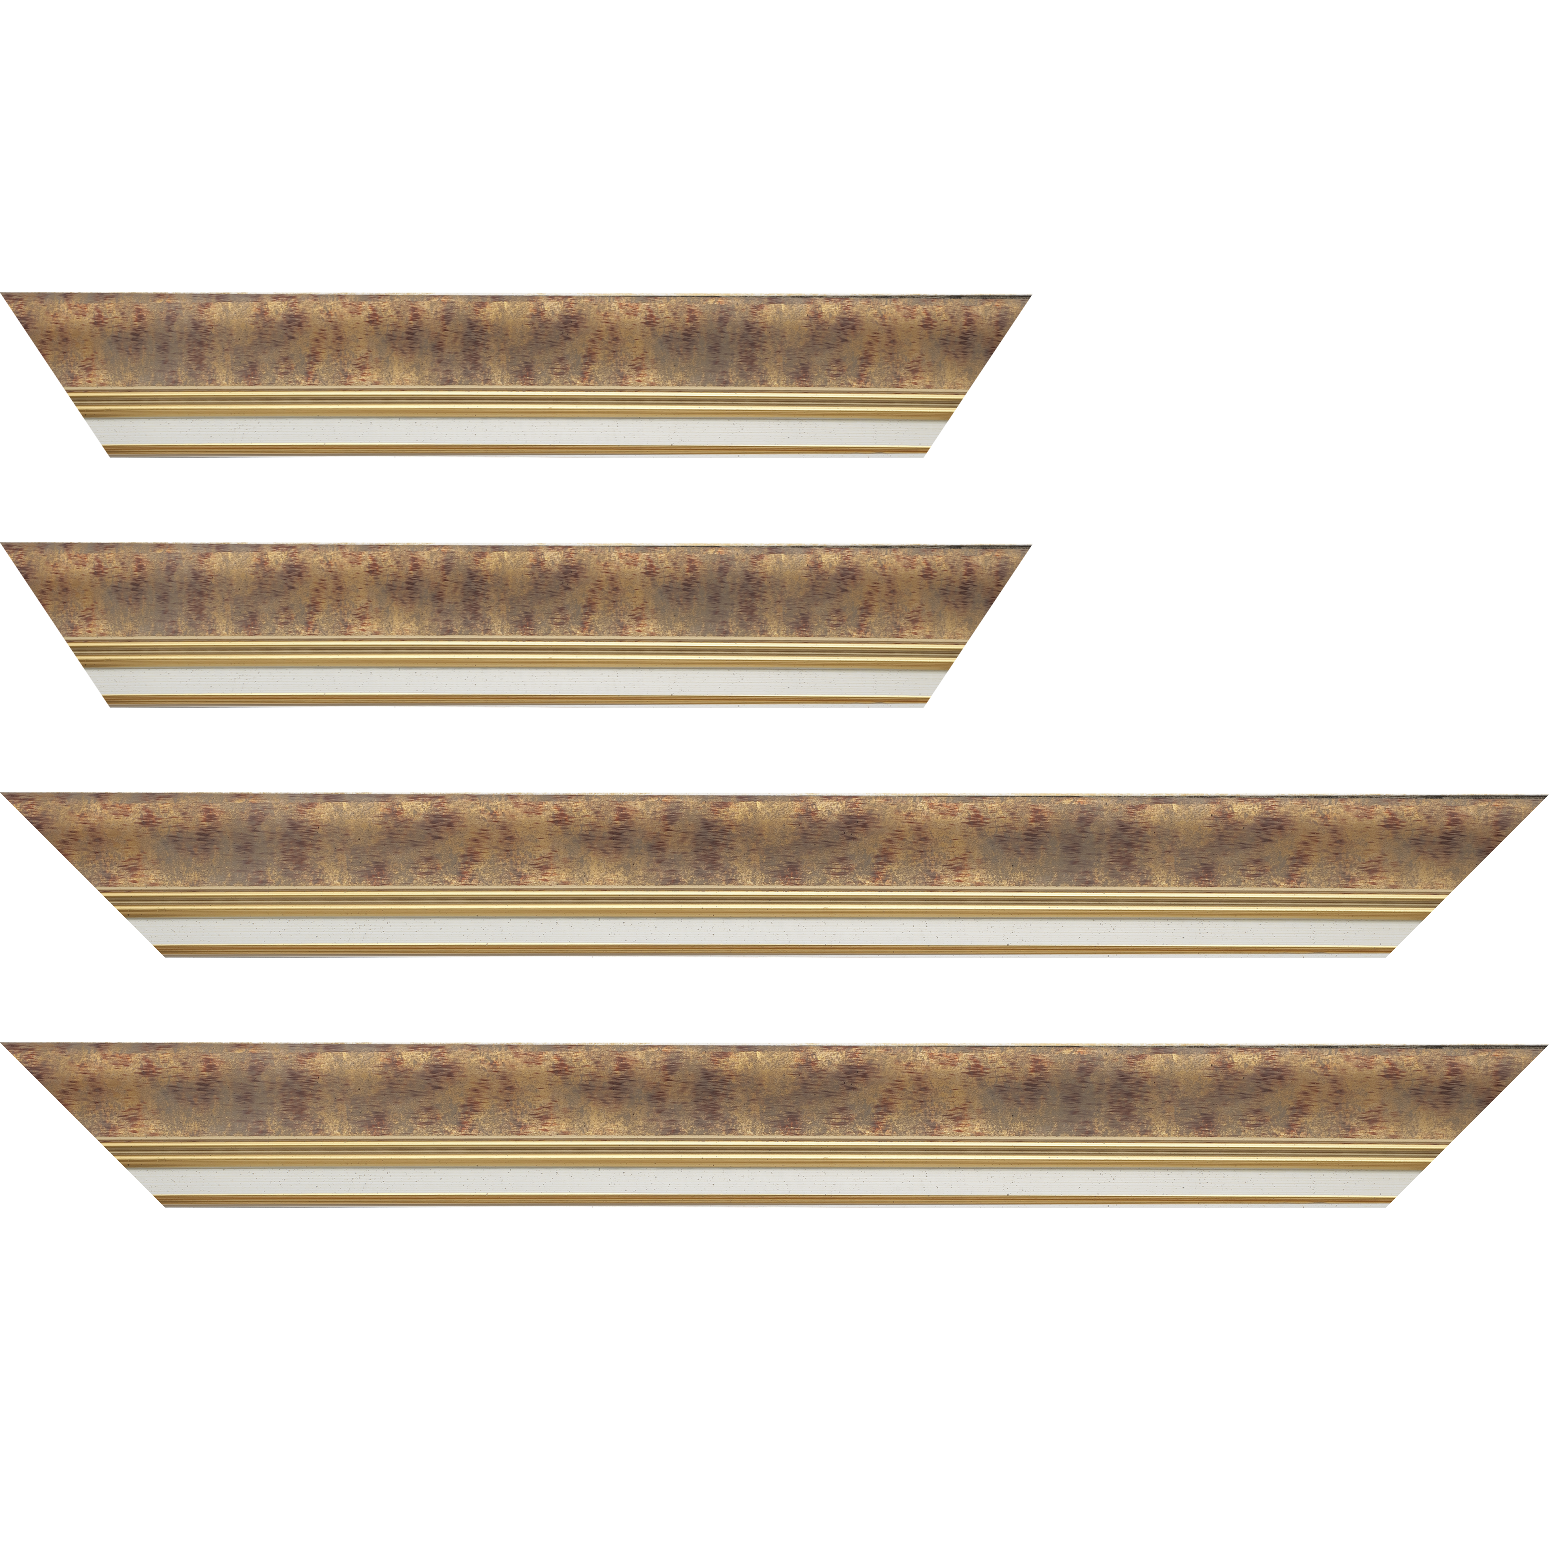 Baguette bois profil incurvé largeur 5.7cm de couleur bordeaux patiné fond or marie louise blanche mouchetée filet or intégré - 92x60